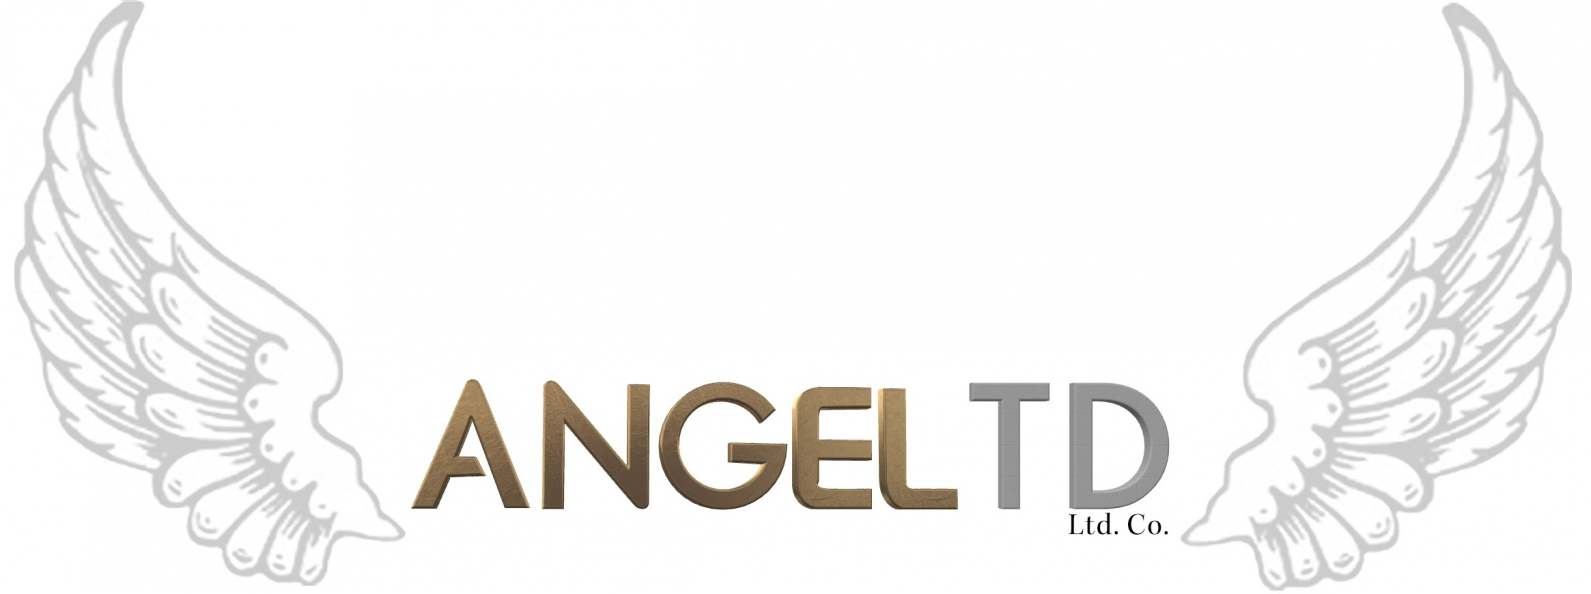 Angel TD Logo